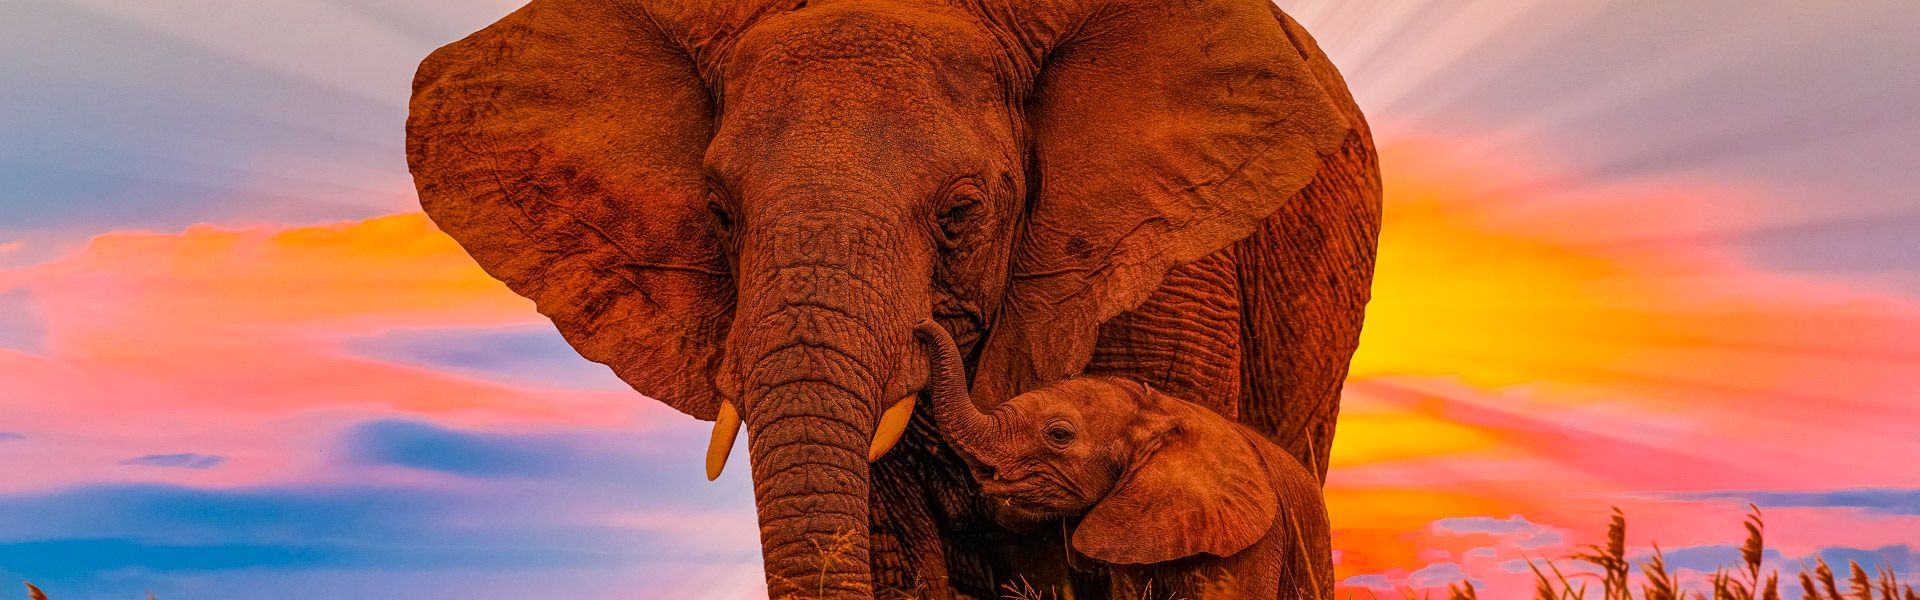 Elefantenmutter mit Baby im Sonnenaufgang |  1001slide, iStockphoto.com / Chamleon